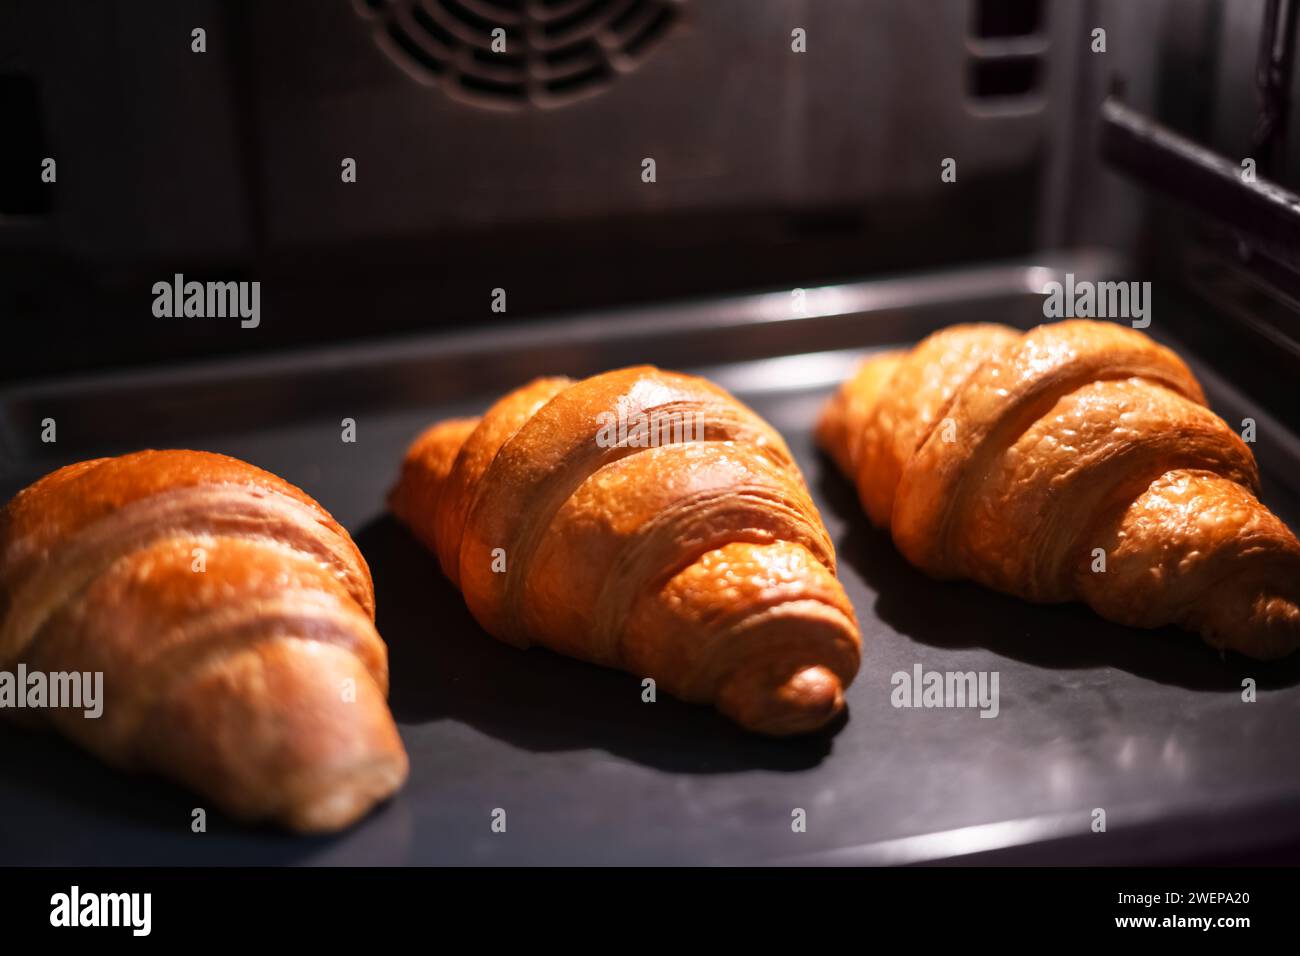 Tre croissant sono cotti nel forno domestico. Fotografia del cibo Foto Stock